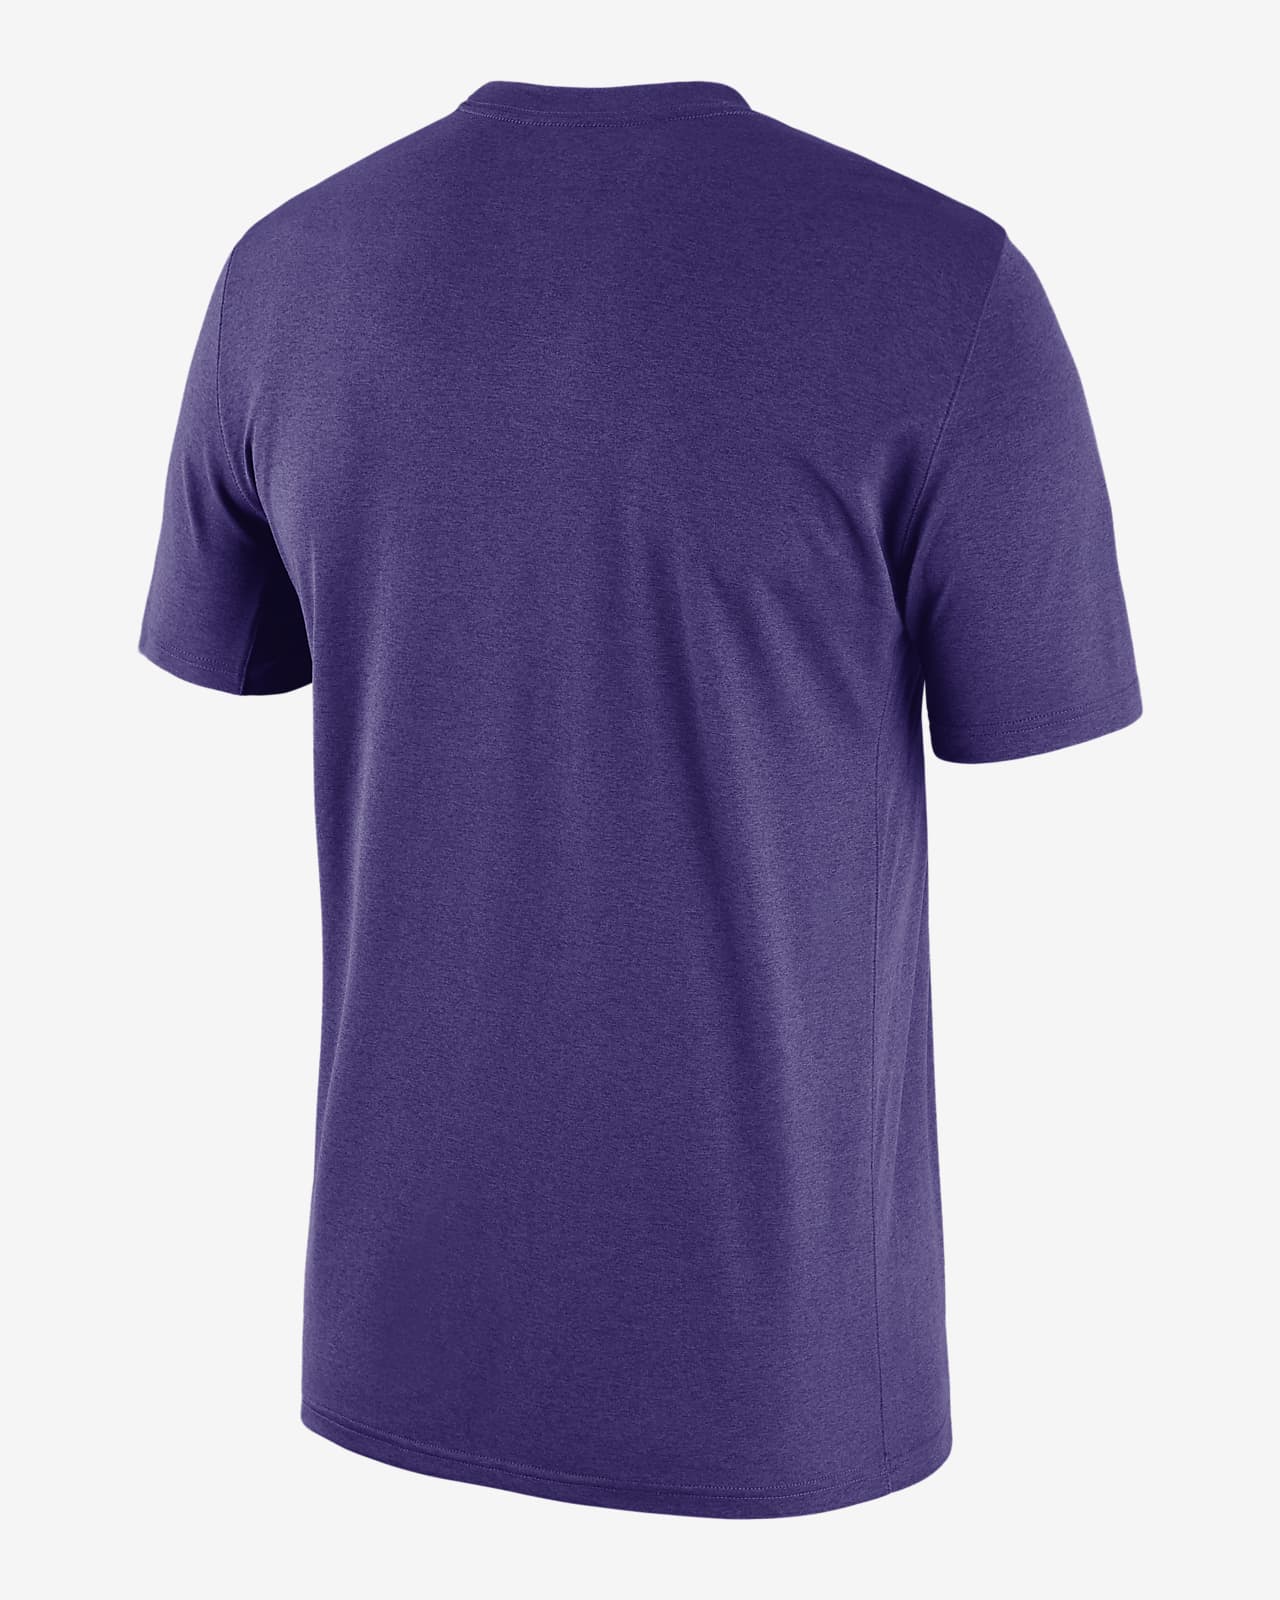 purple dri fit shirt